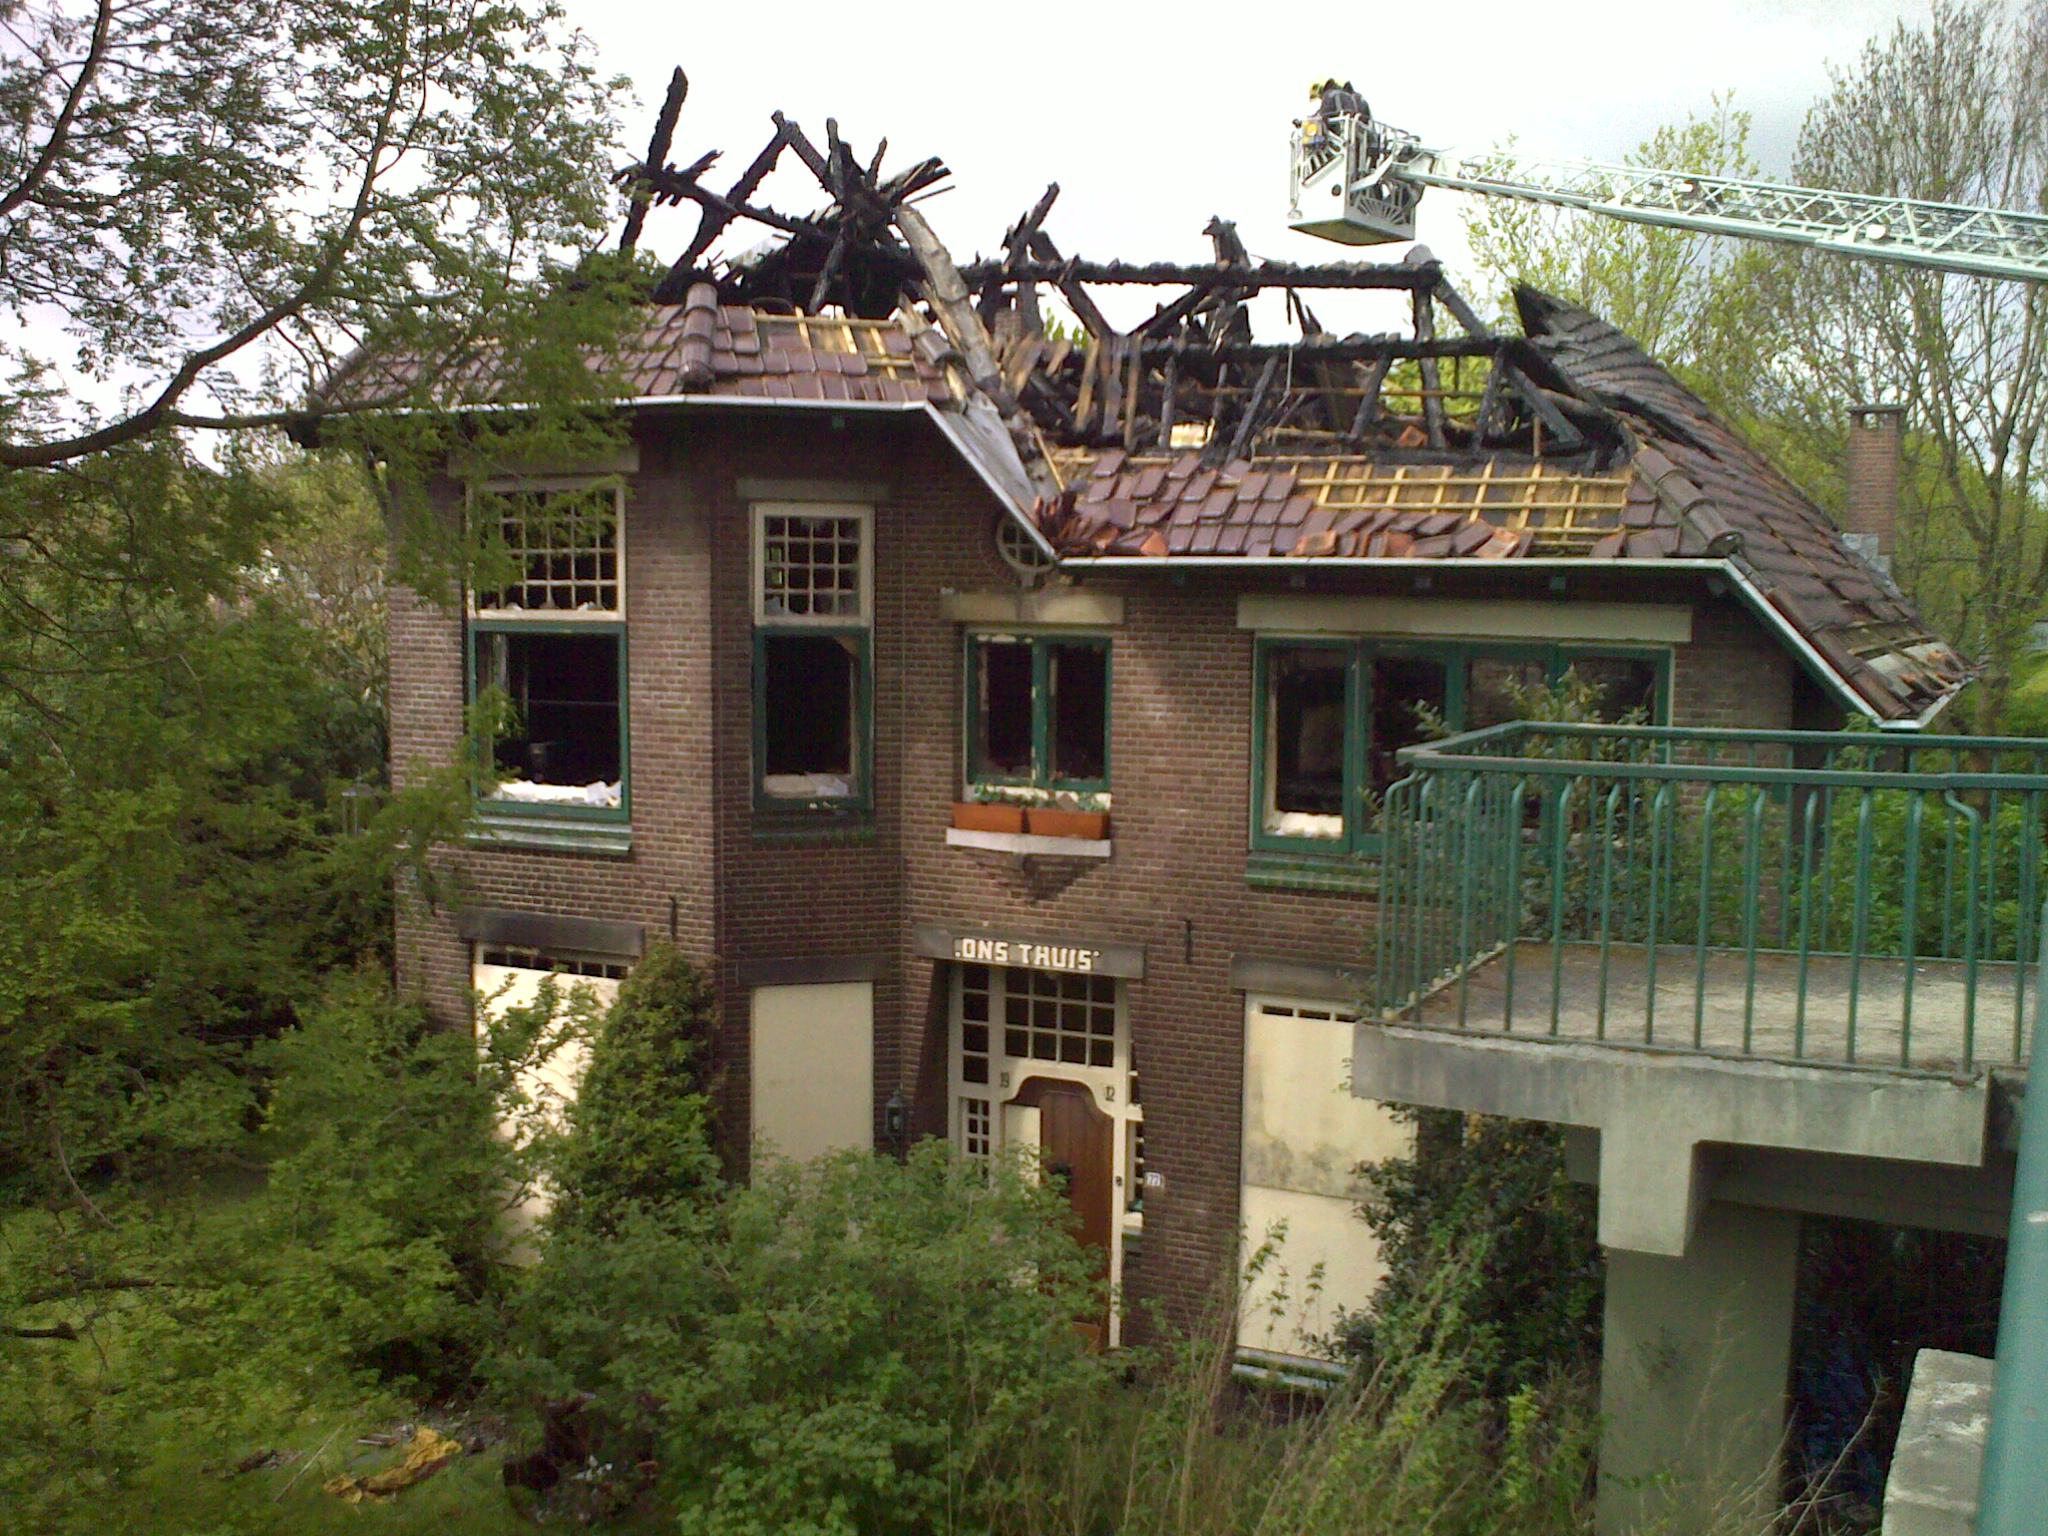 Alphen aan de Rijn - Wilhelminalaan 77 - afgebrand 9 mei 2013